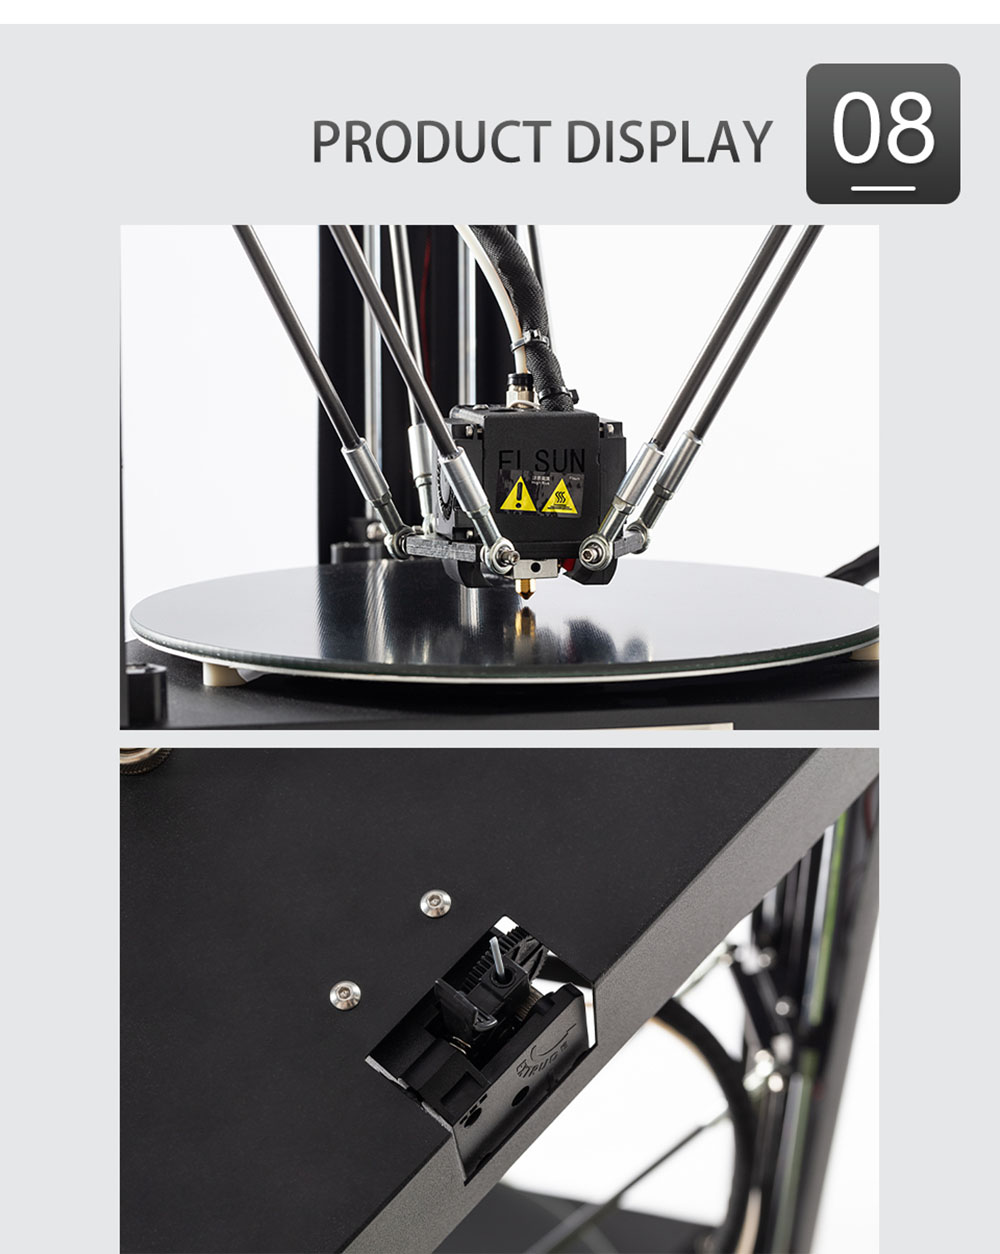 Flsun QQ-S Pro Wstępnie zmontowana drukarka Delta 3D Automatyczne poziomowanie krata szklana platforma Ekran dotykowy 255X360mm Rozmiar wydruku